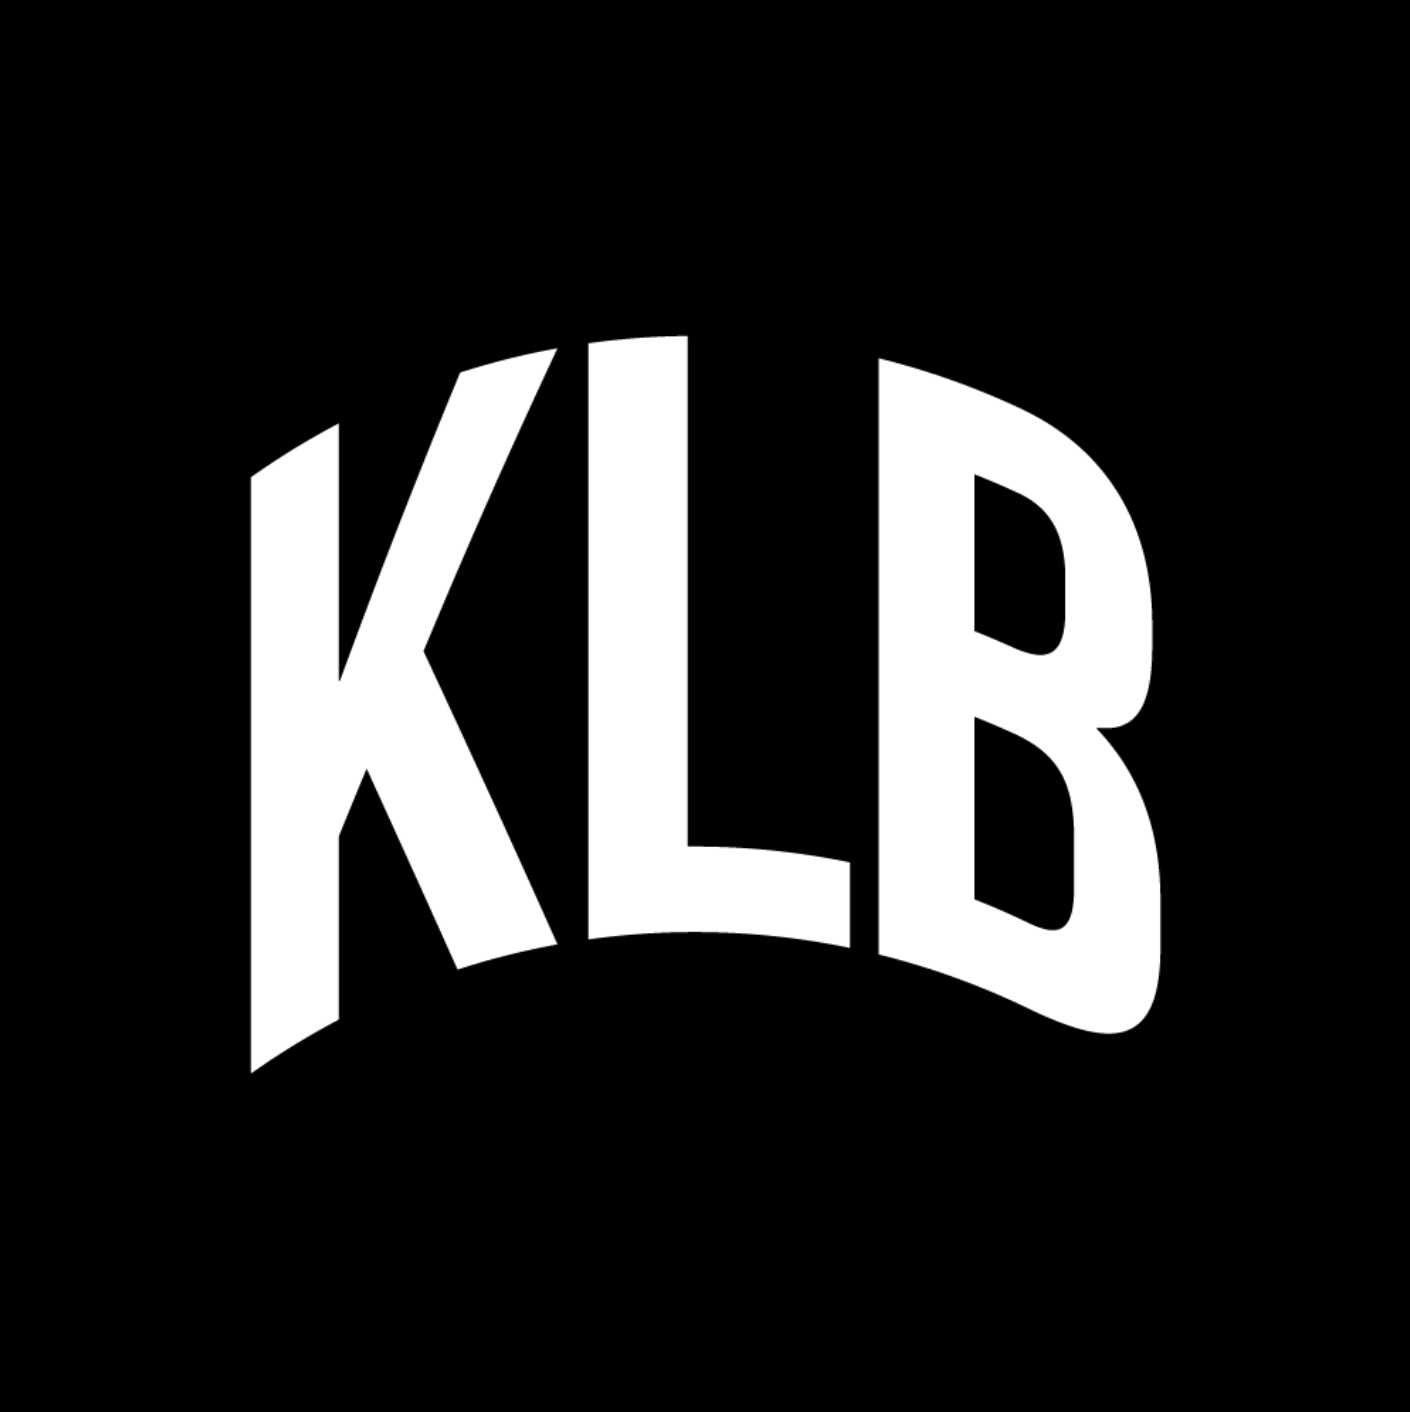 KLB Logo - KLB LOGO HOODIE